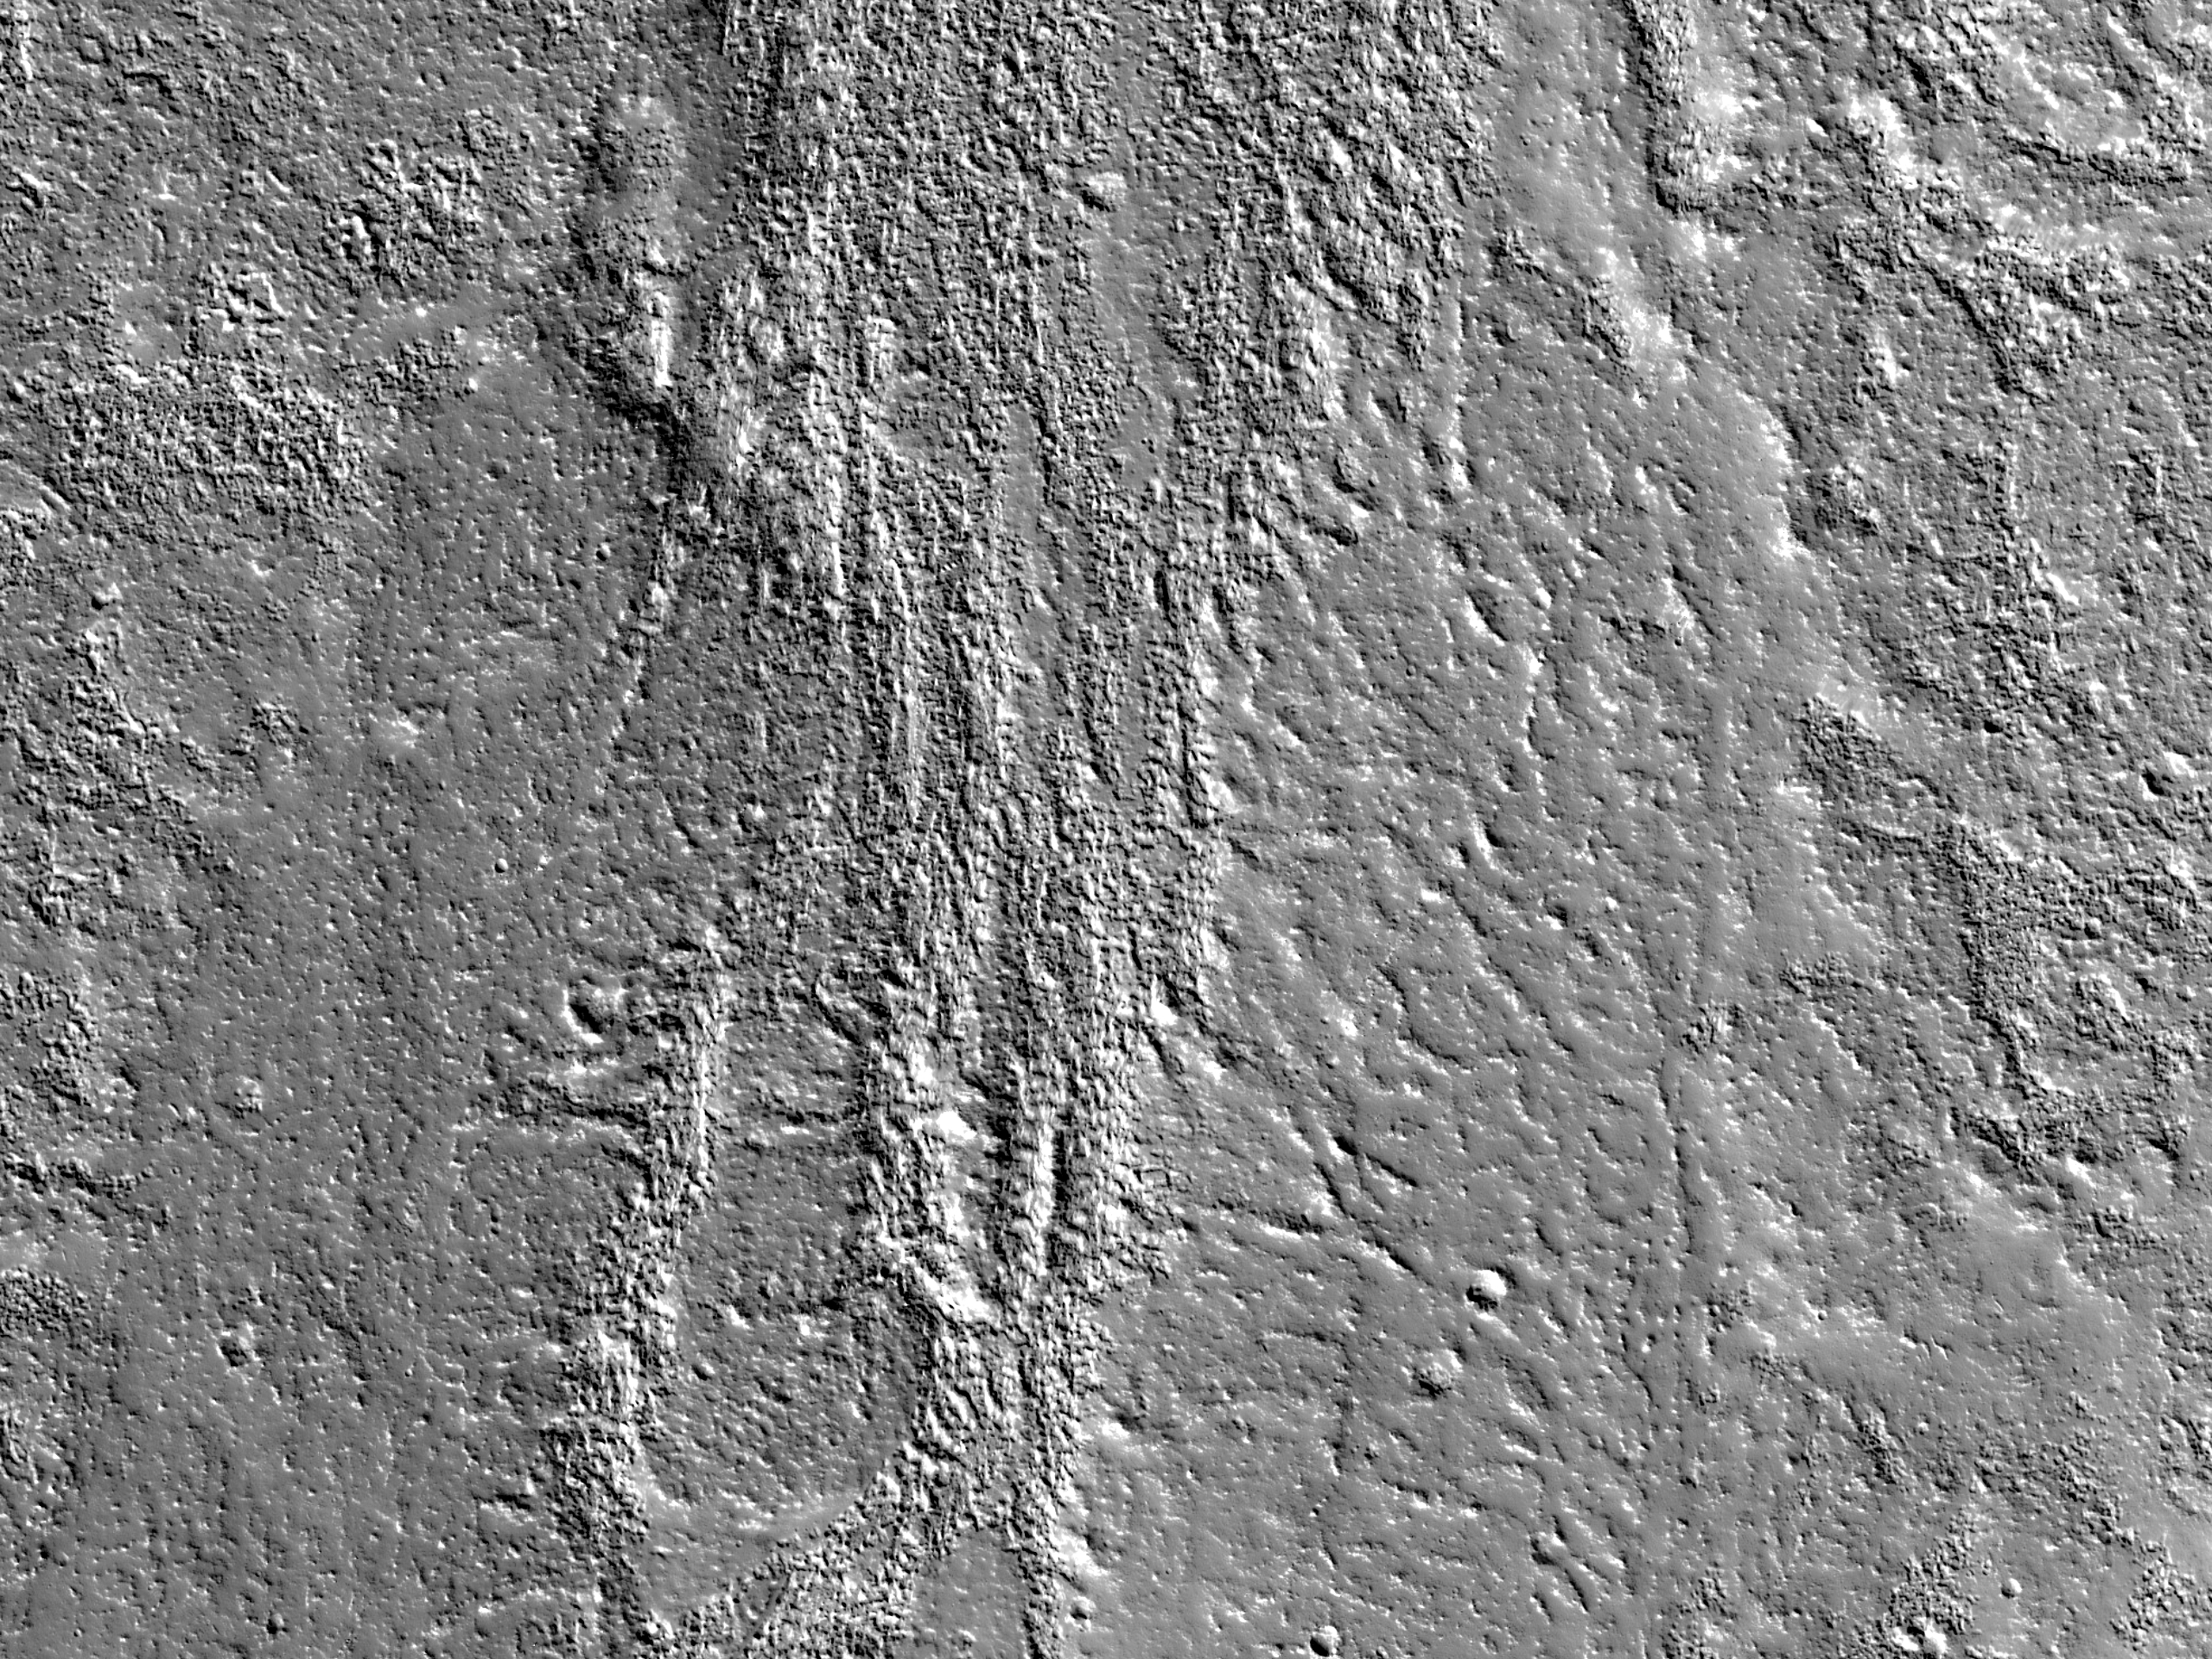 Channels in Enipeus Vallis